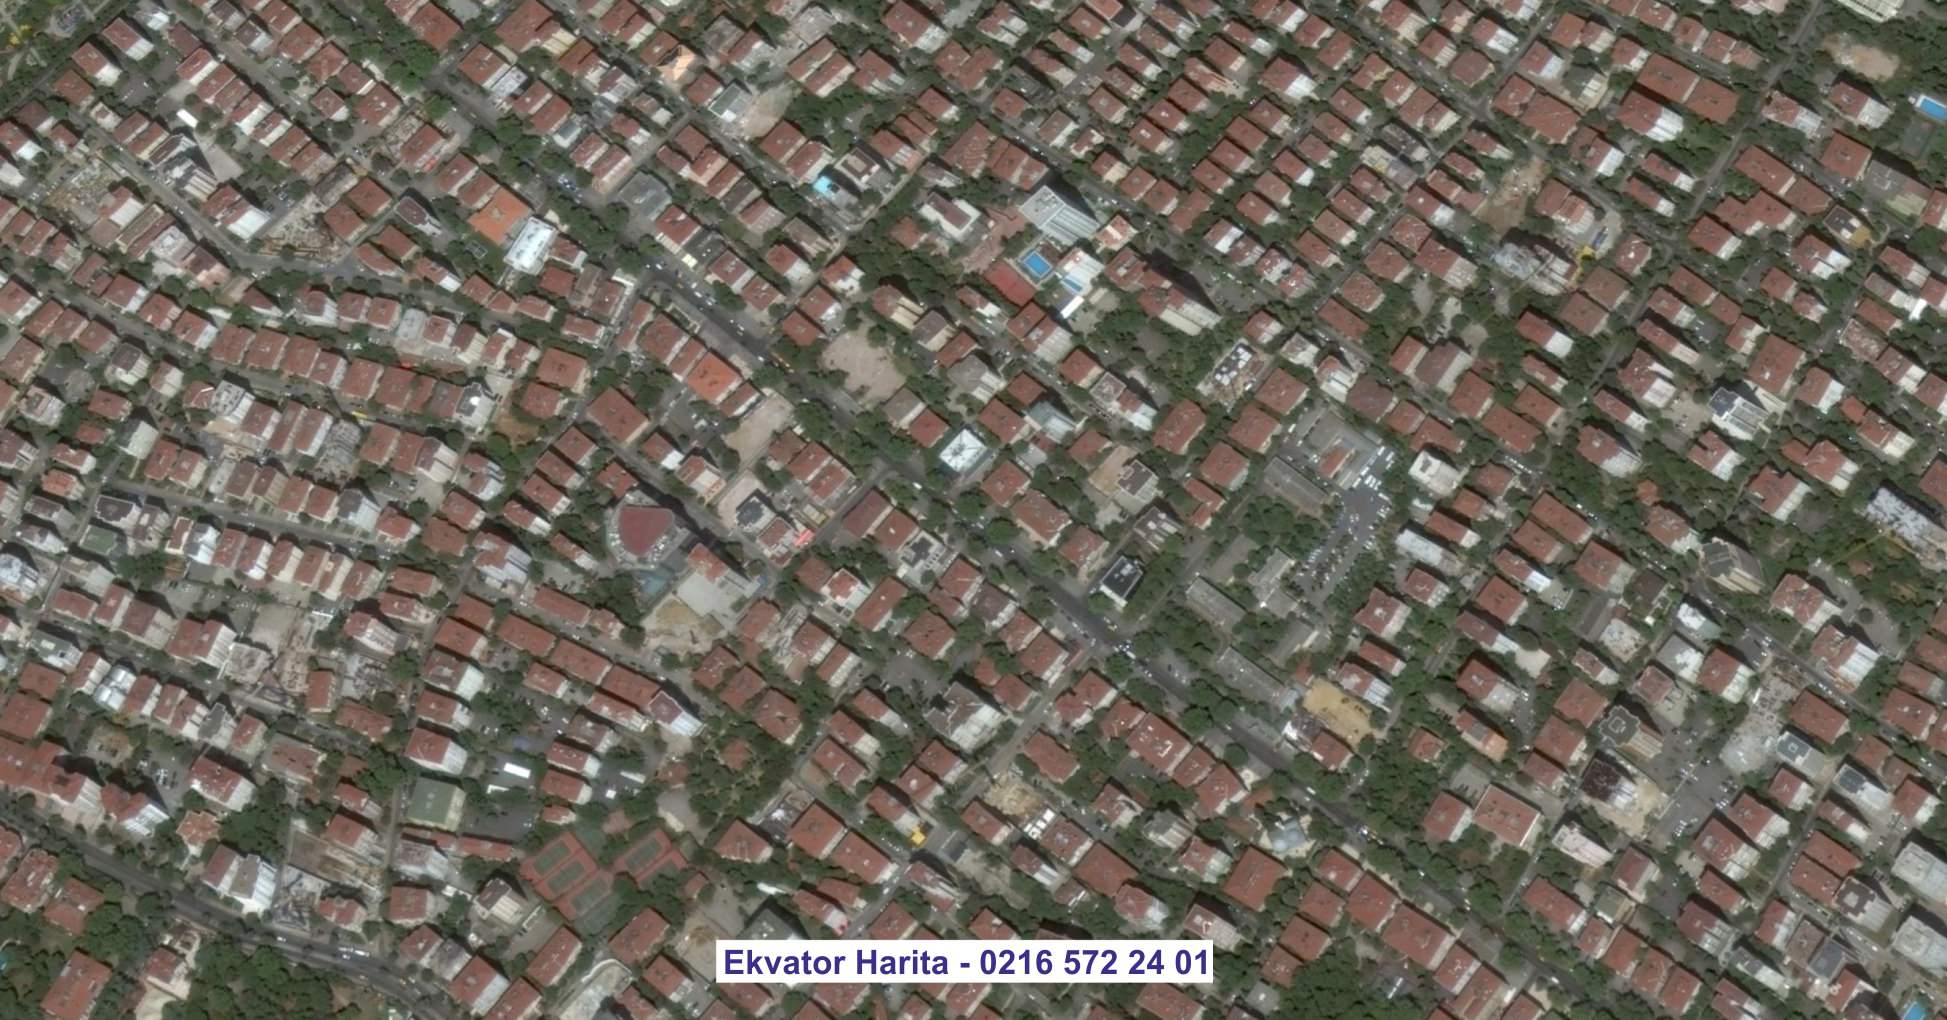 Gazimağusa Uydu Görüntüsü Örnek Fotoğrafı